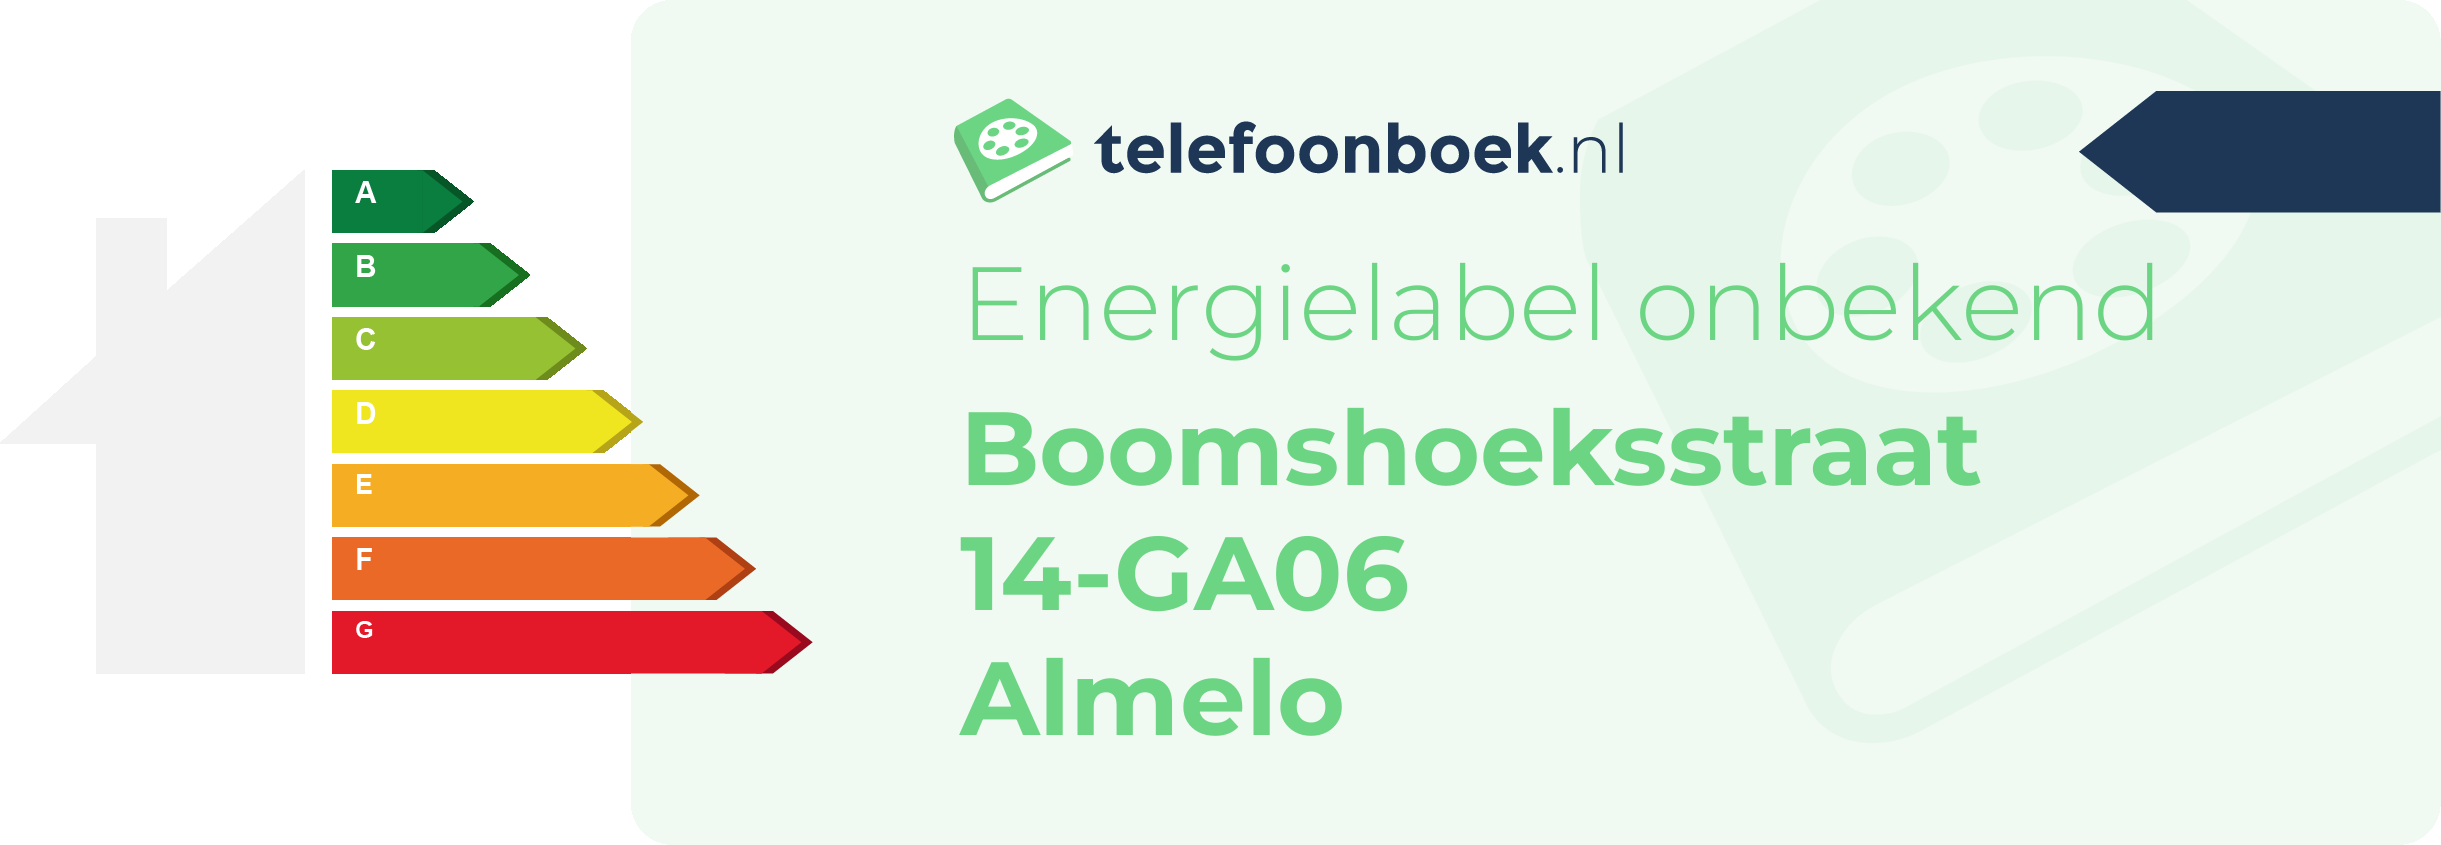 Energielabel Boomshoeksstraat 14-GA06 Almelo